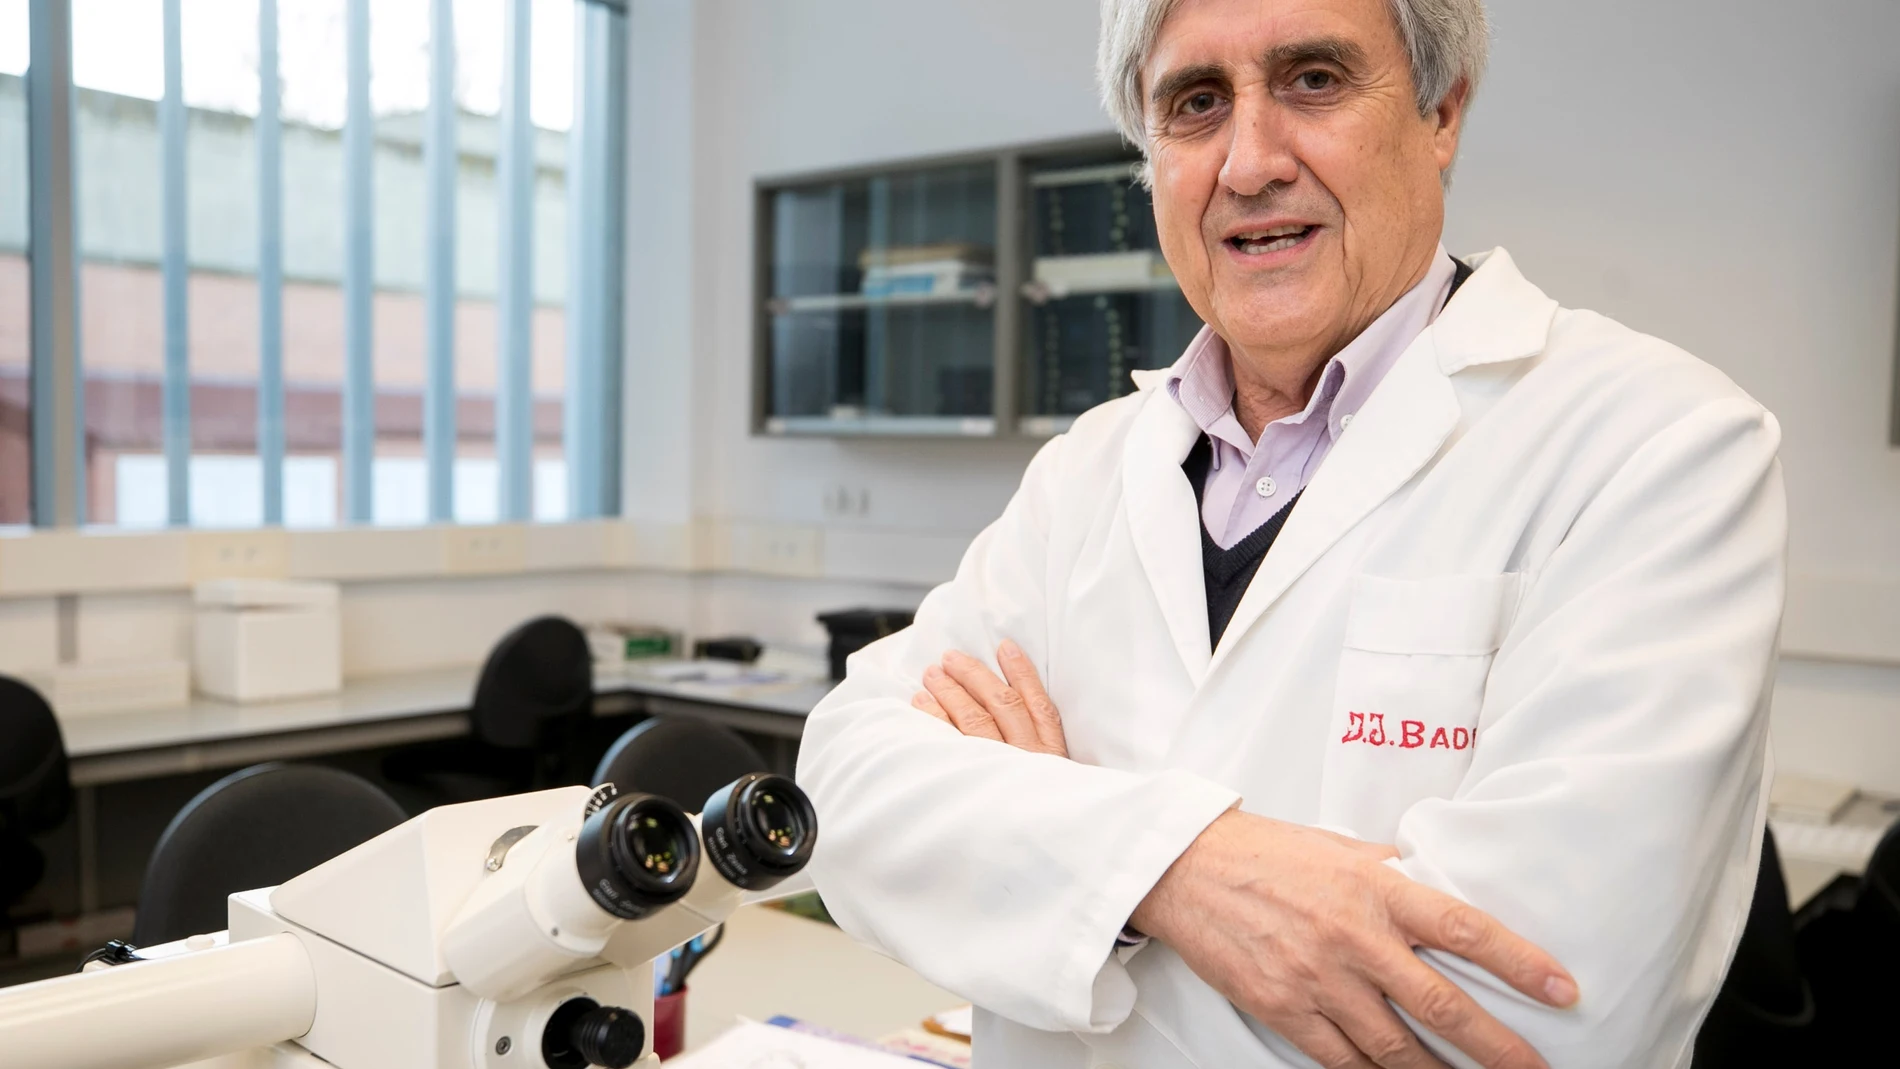 El investigador Juan José Badiola cree que tratar la covid-19 como la gripe es "prematuro e improvisado" en la actualidad